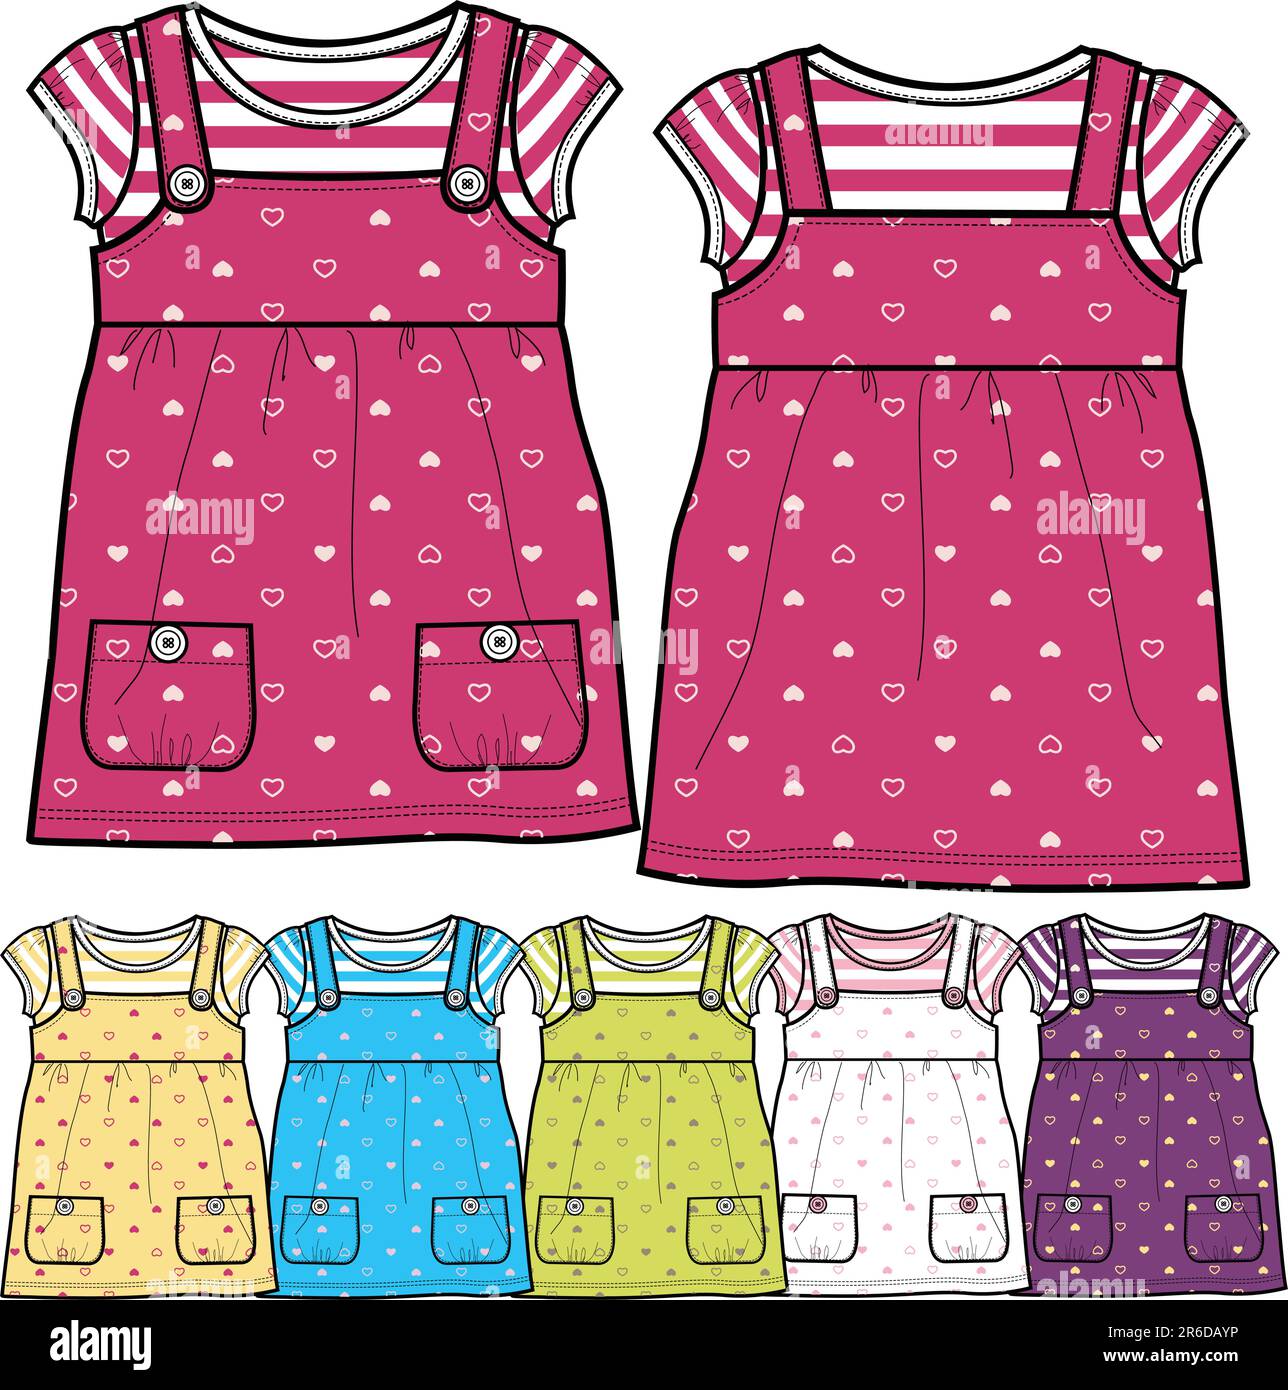 Baby dress sketch Royalty Free Vector Image - VectorStock